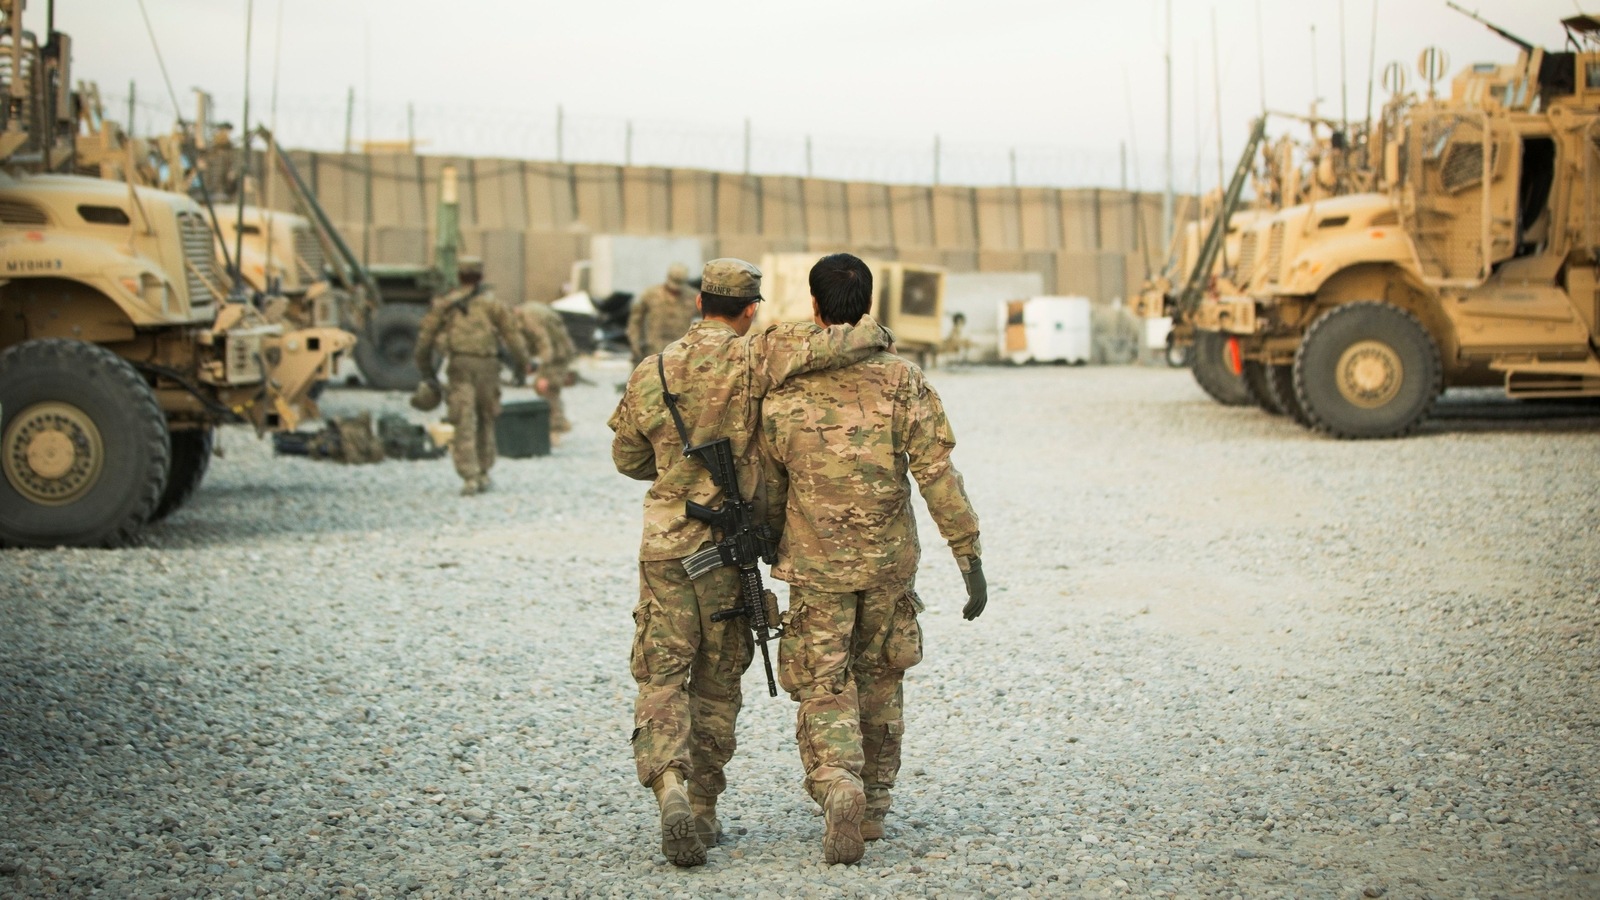 Gli Stati Uniti evacuano 200 alleati che hanno aiutato durante la guerra in Afghanistan e finanziano i loro visti |  notizie dal mondo